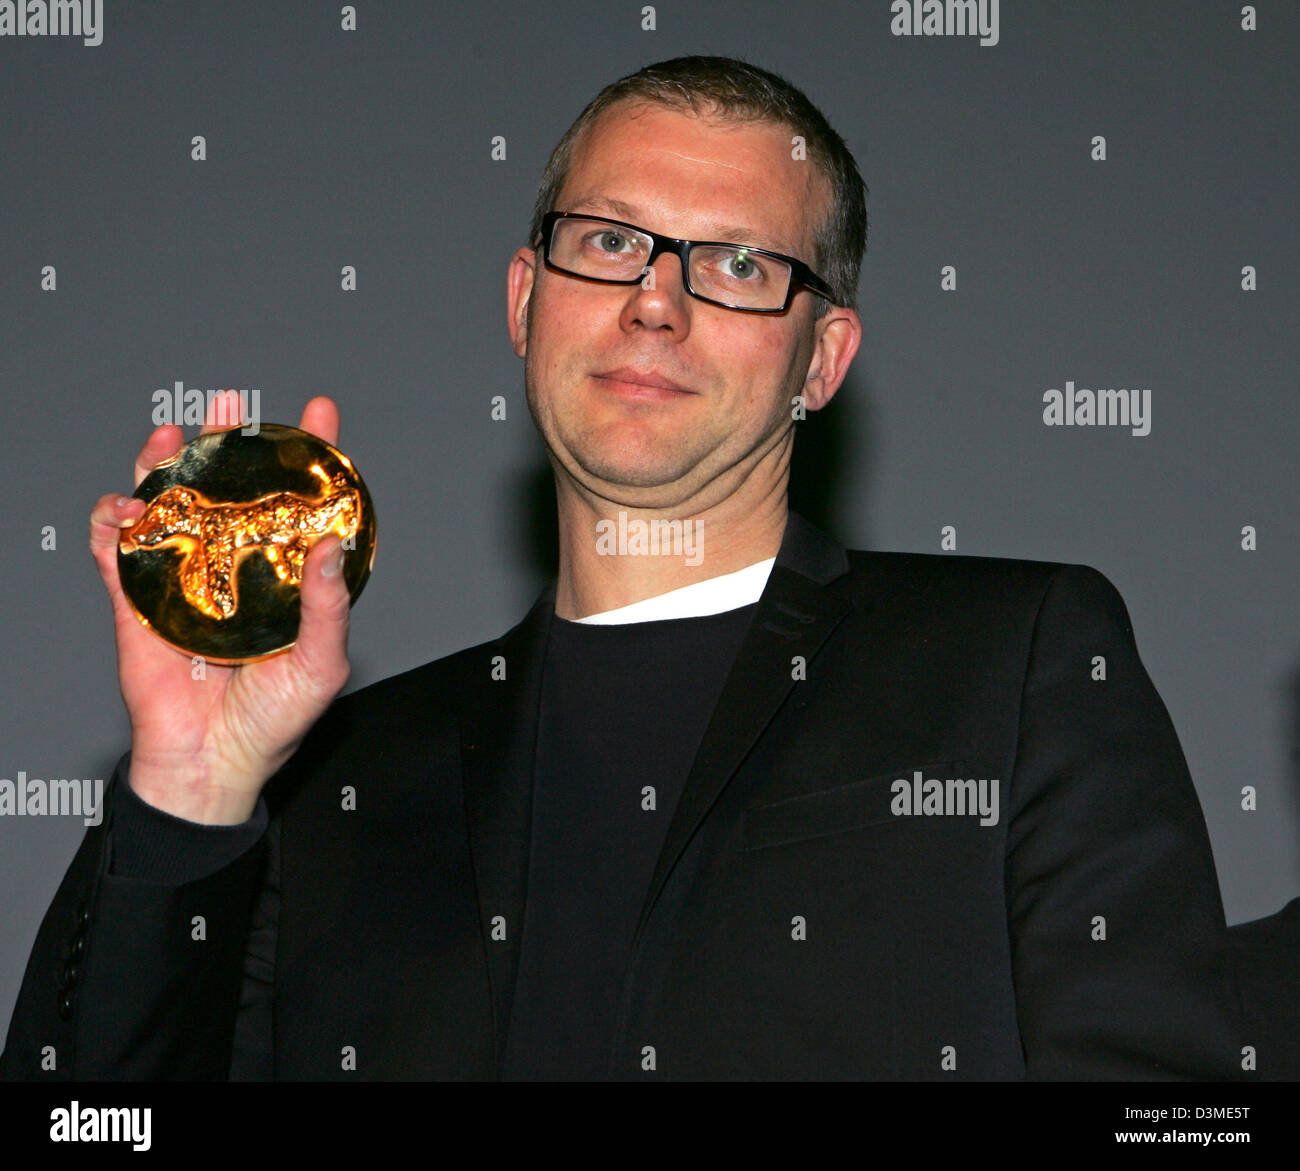 Directeur suédois Jonas Odell présente fièrement son 'Golden Bear' Award au 56ème Festival International du Film de Berlin, lundi 13 février 2006. Odell a reçu le prix pour son film d'animation 'Aldrig som foersta gaengen !' (plus jamais comme la première fois !) dans la catégorie "Meilleur court métrage". Photo : Jens Kalaene Banque D'Images